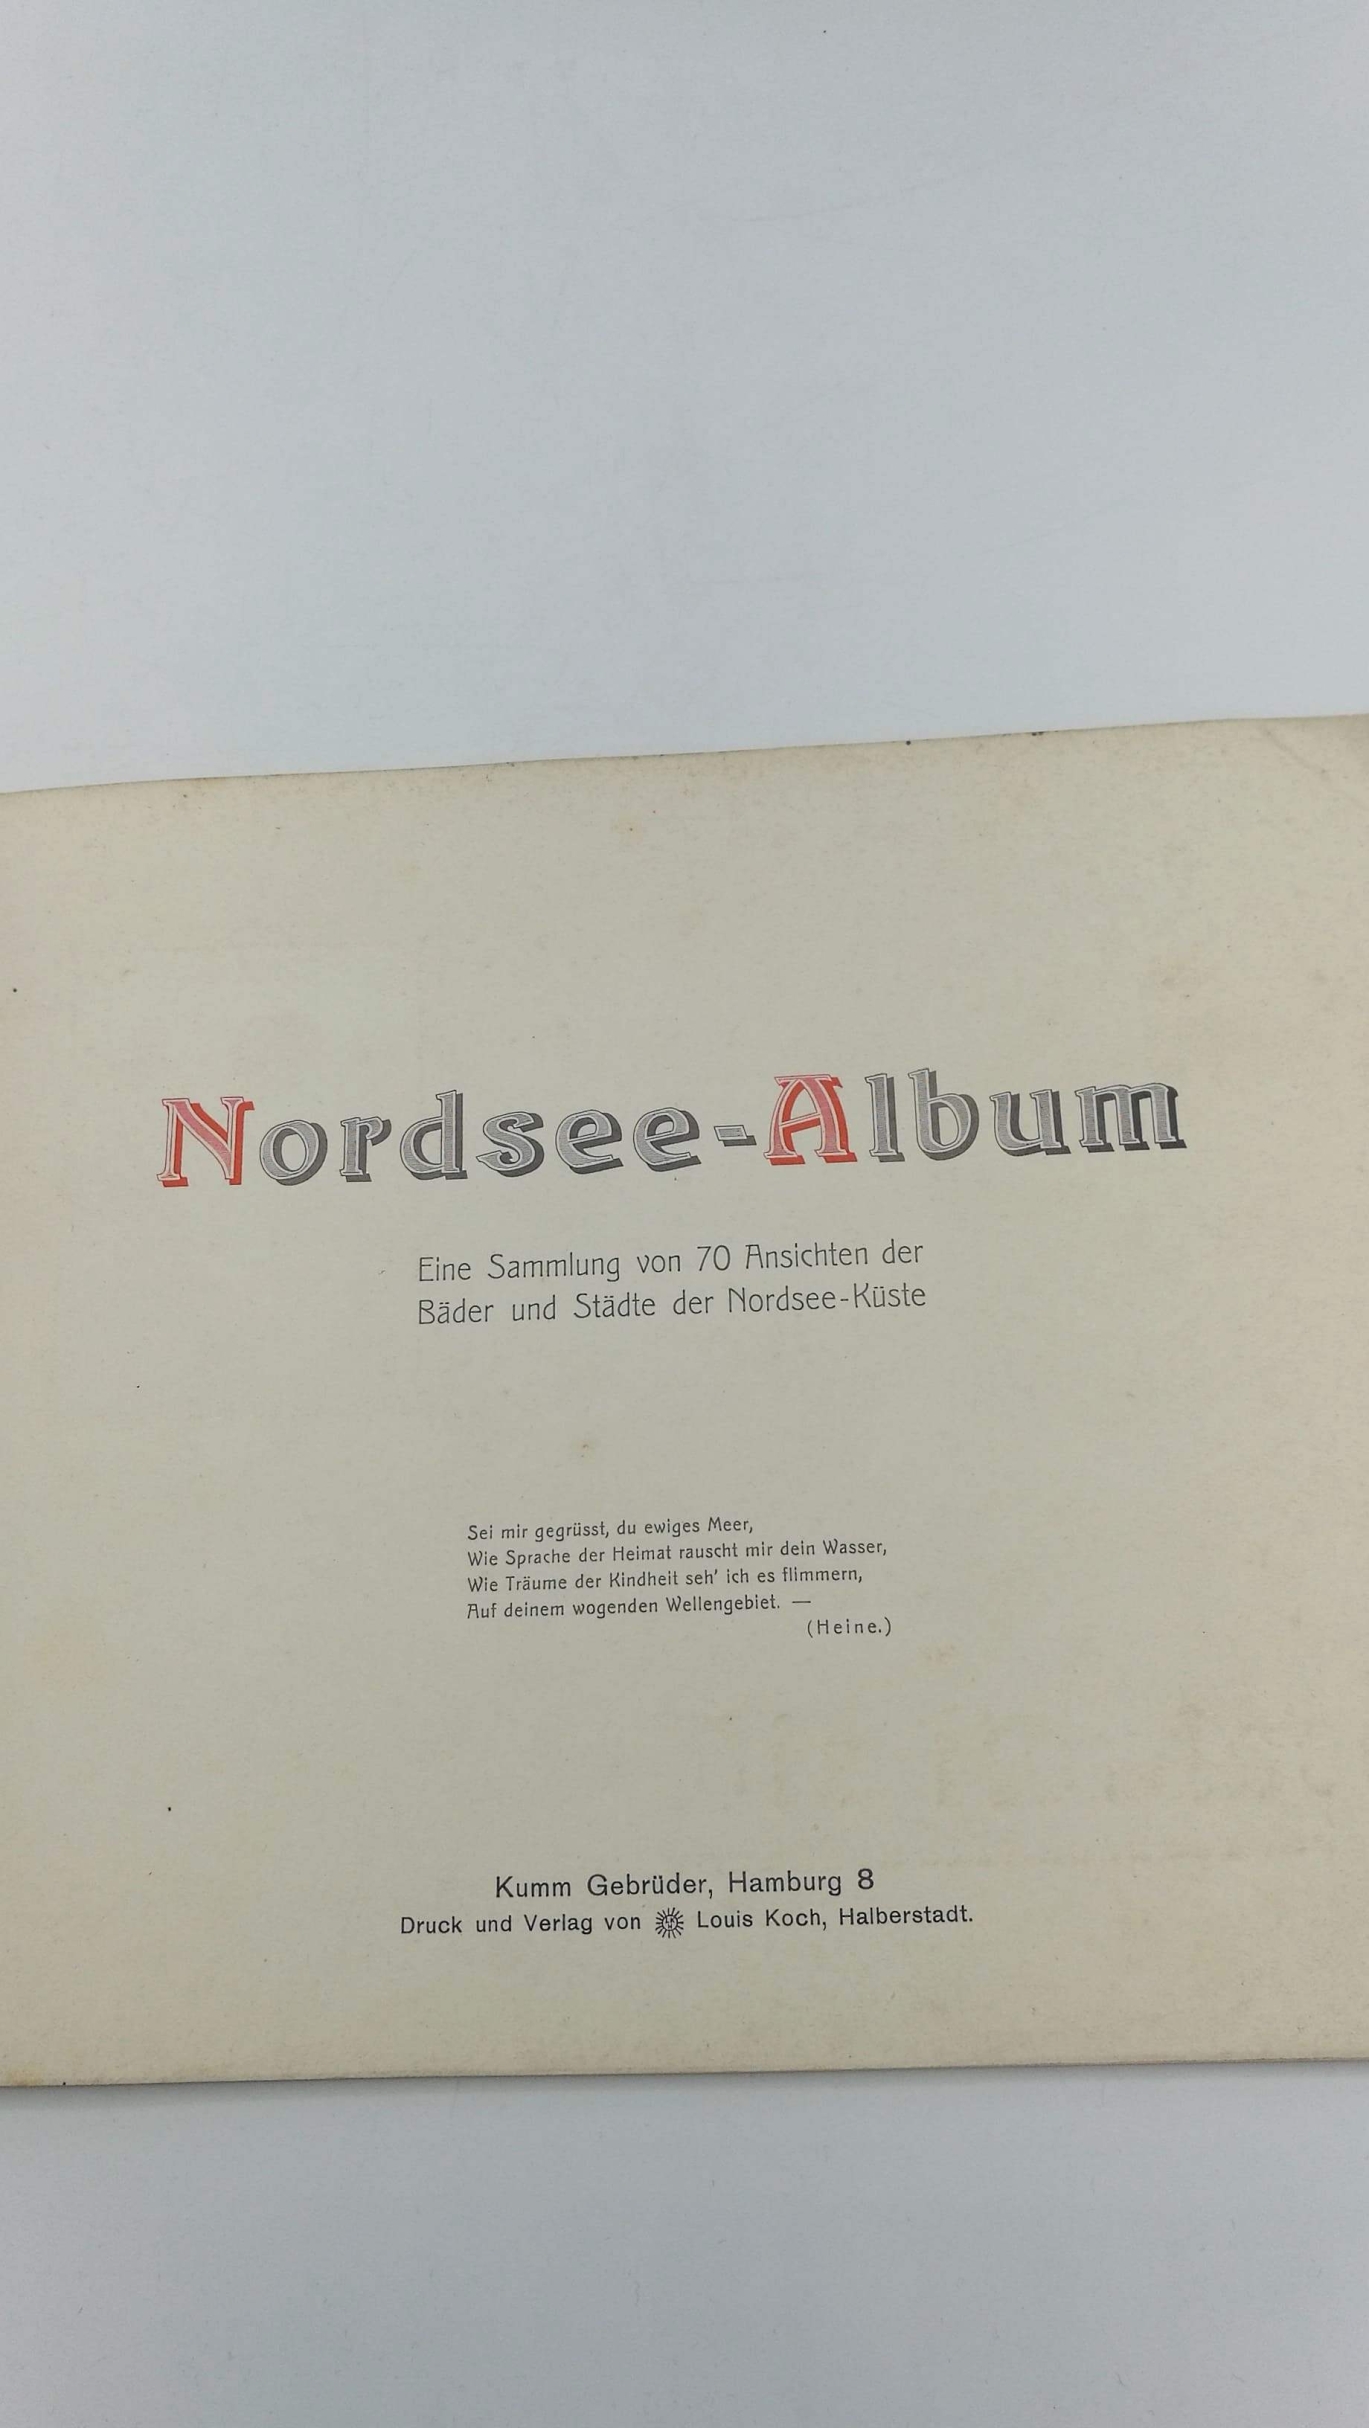 Die Nordsee: Nordsee-Album. Eine Sammlung von 70 Ansichten der Bäder und Städte der Nordsee-Küste.